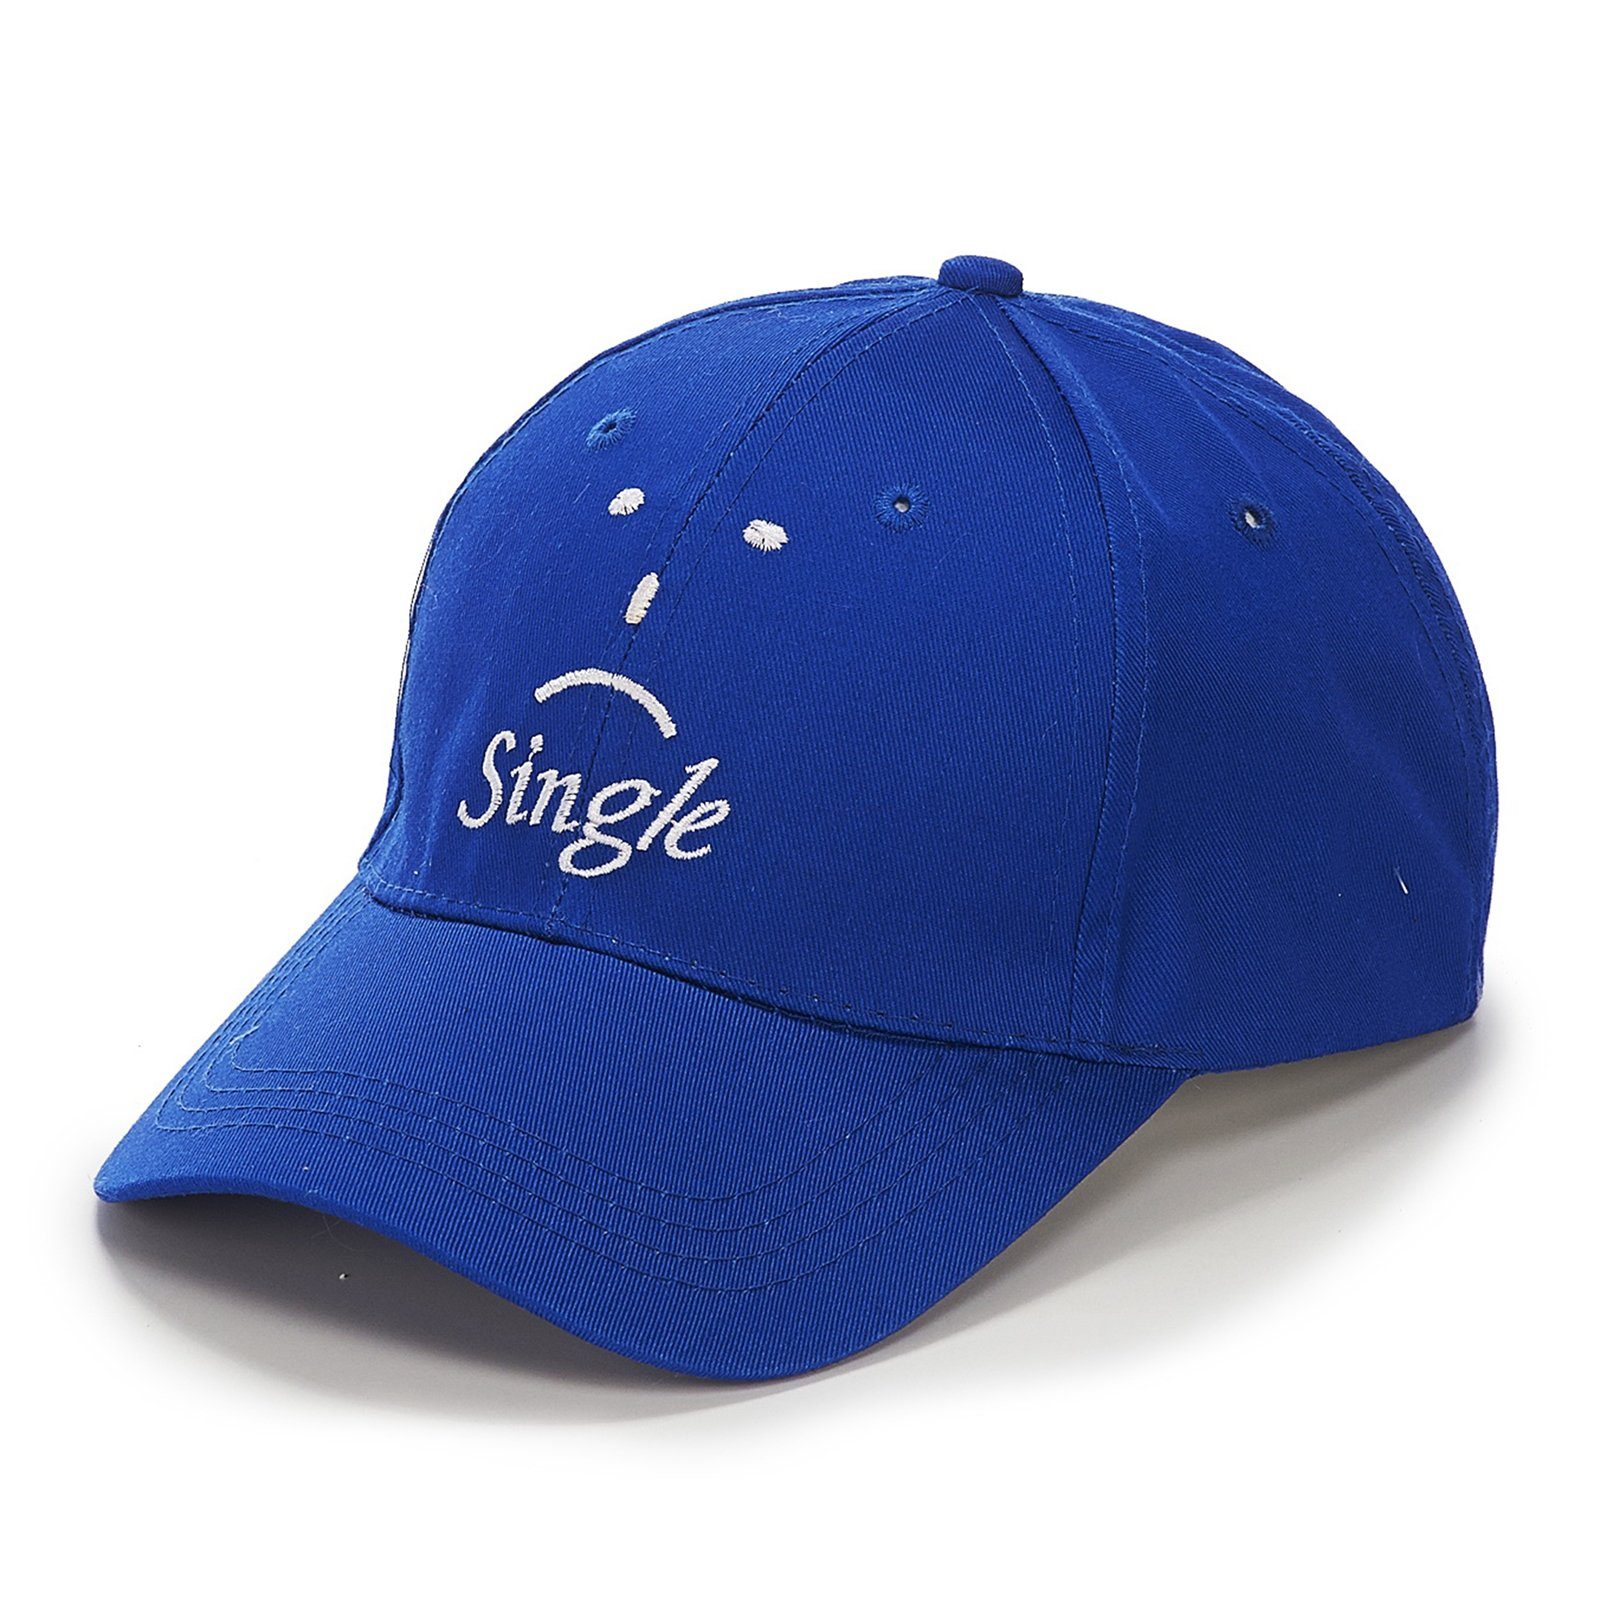 Baseball Cap Baseball Cap Blau Single HTI-Living